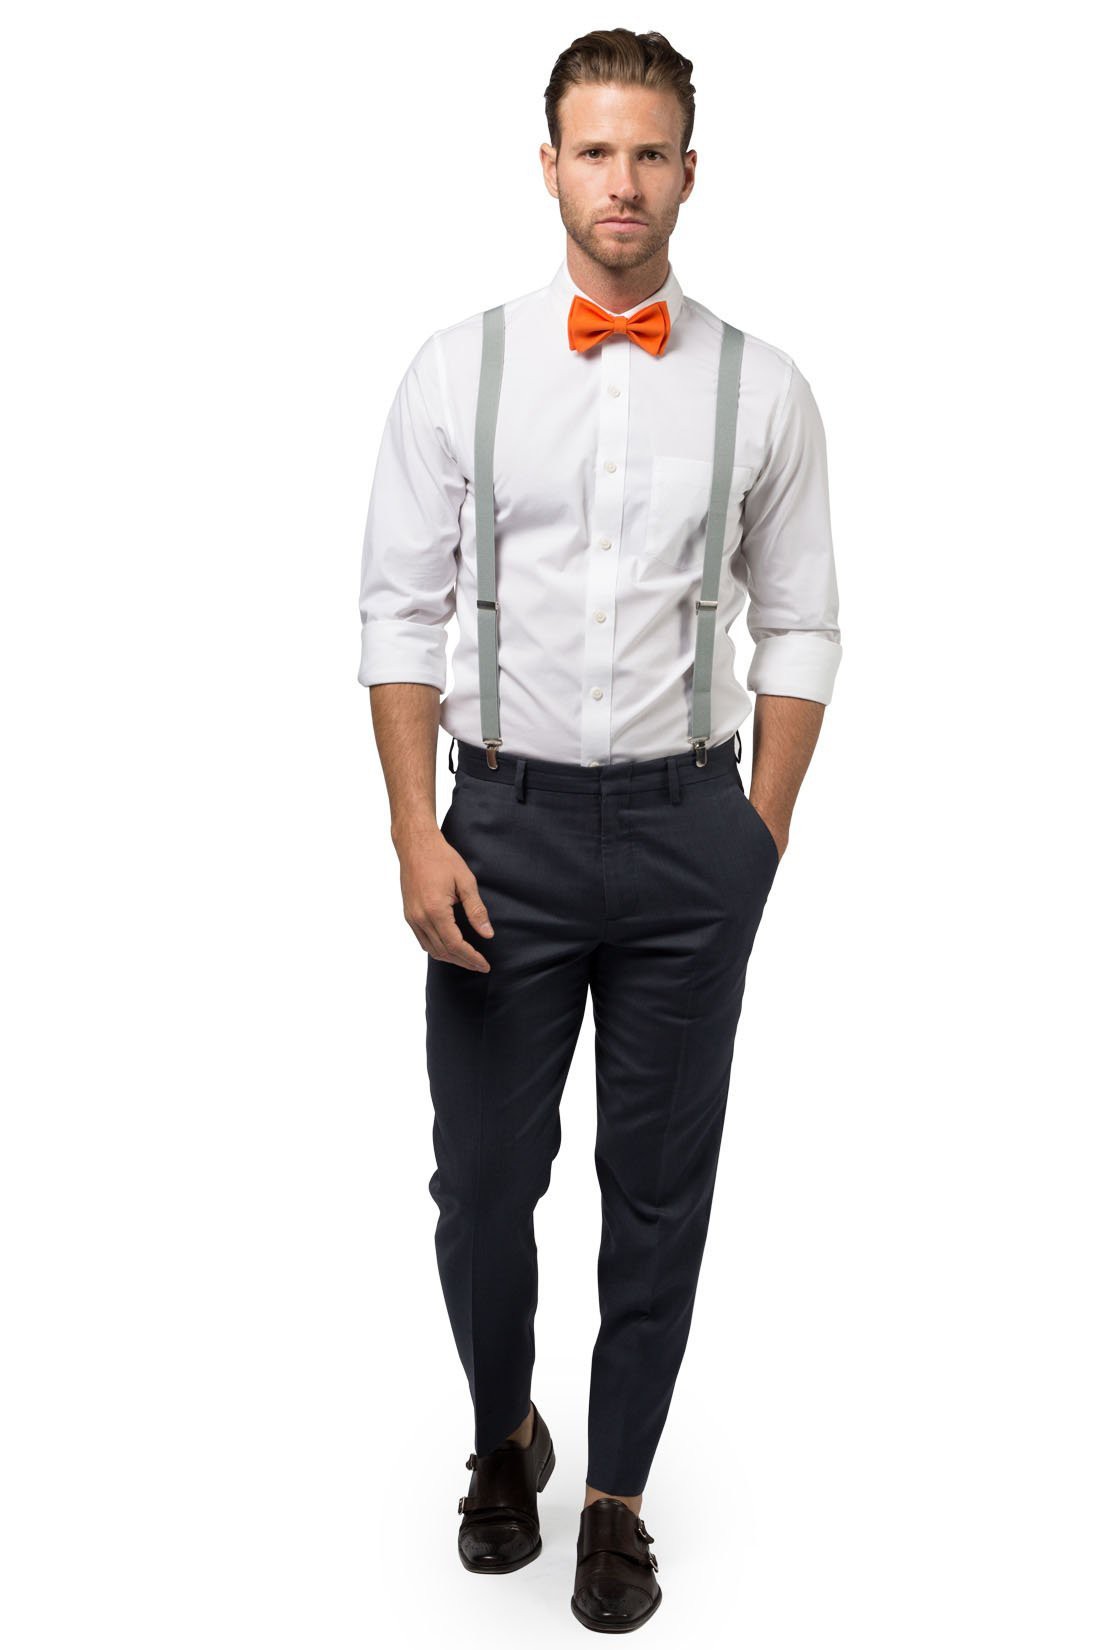 Light Gray Suspenders & Orange Bow Tie